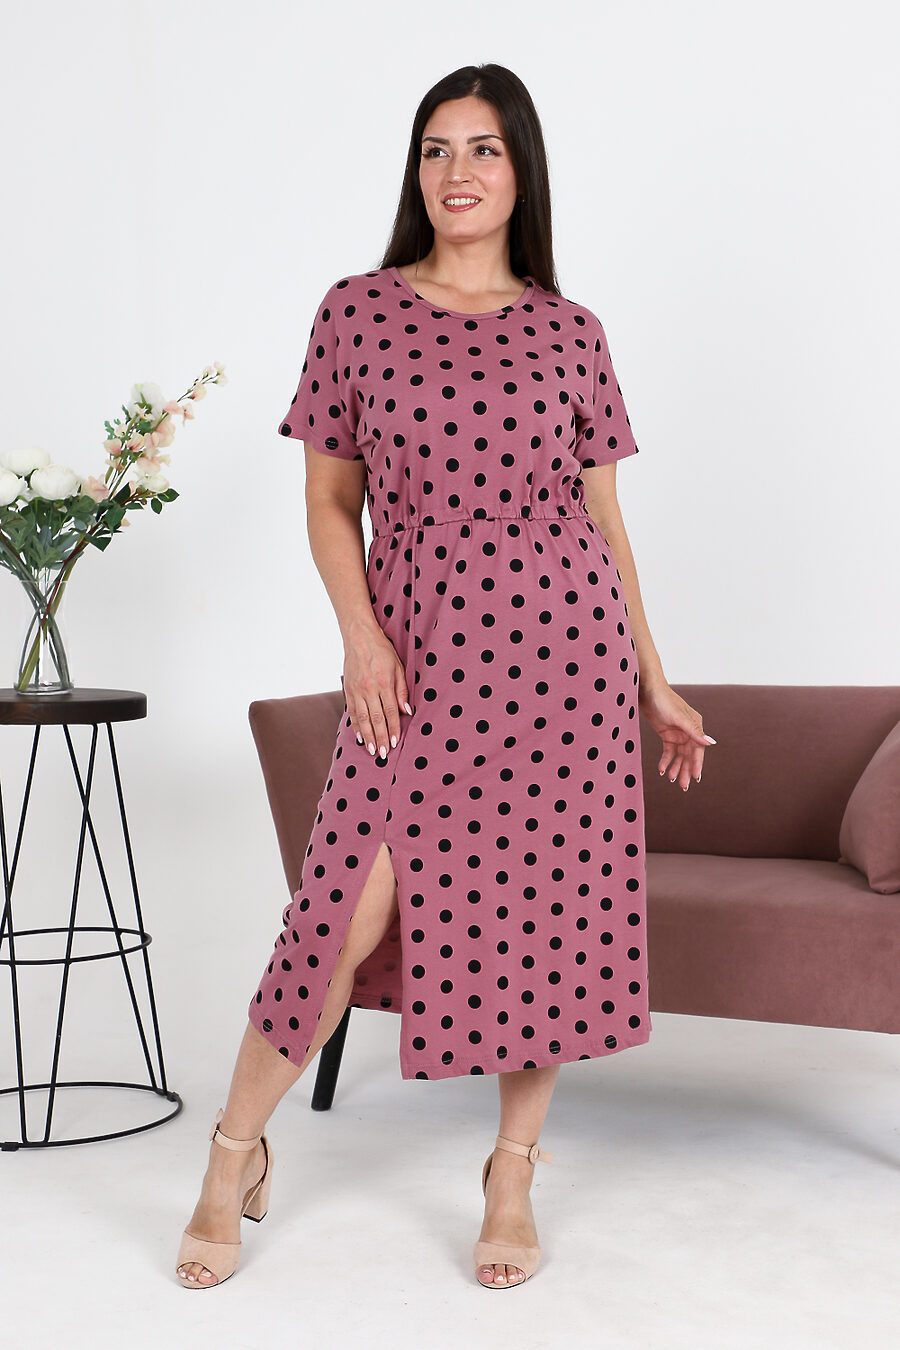 Платье 35711 для женщин НАТАЛИ 796323 купить оптом от производителя. Совместная покупка женской одежды в OptMoyo